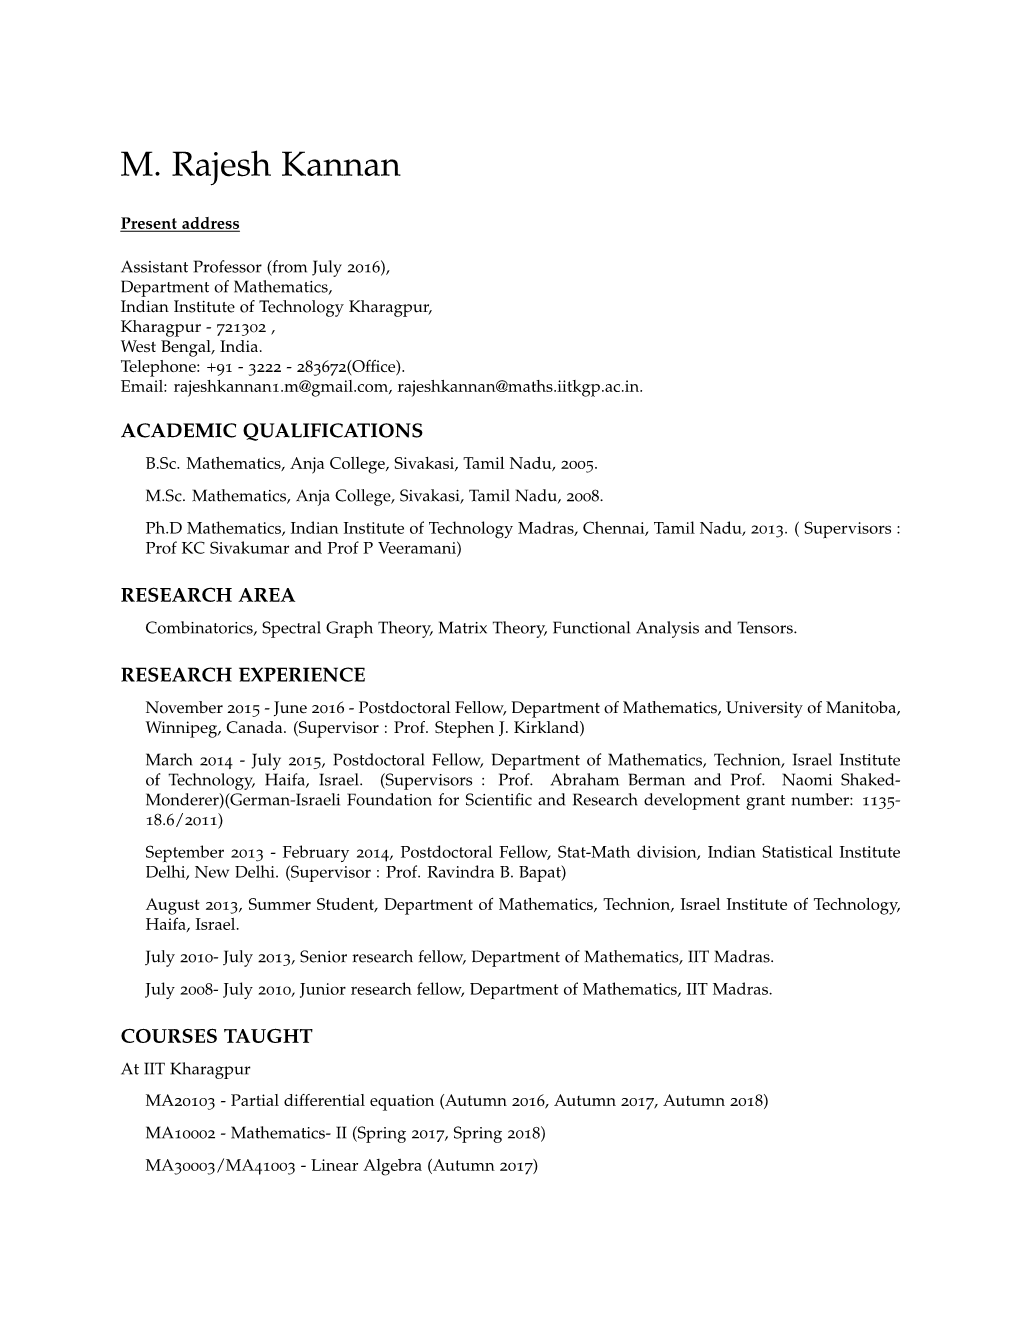 M. Rajesh Kannan: Curriculum Vitae